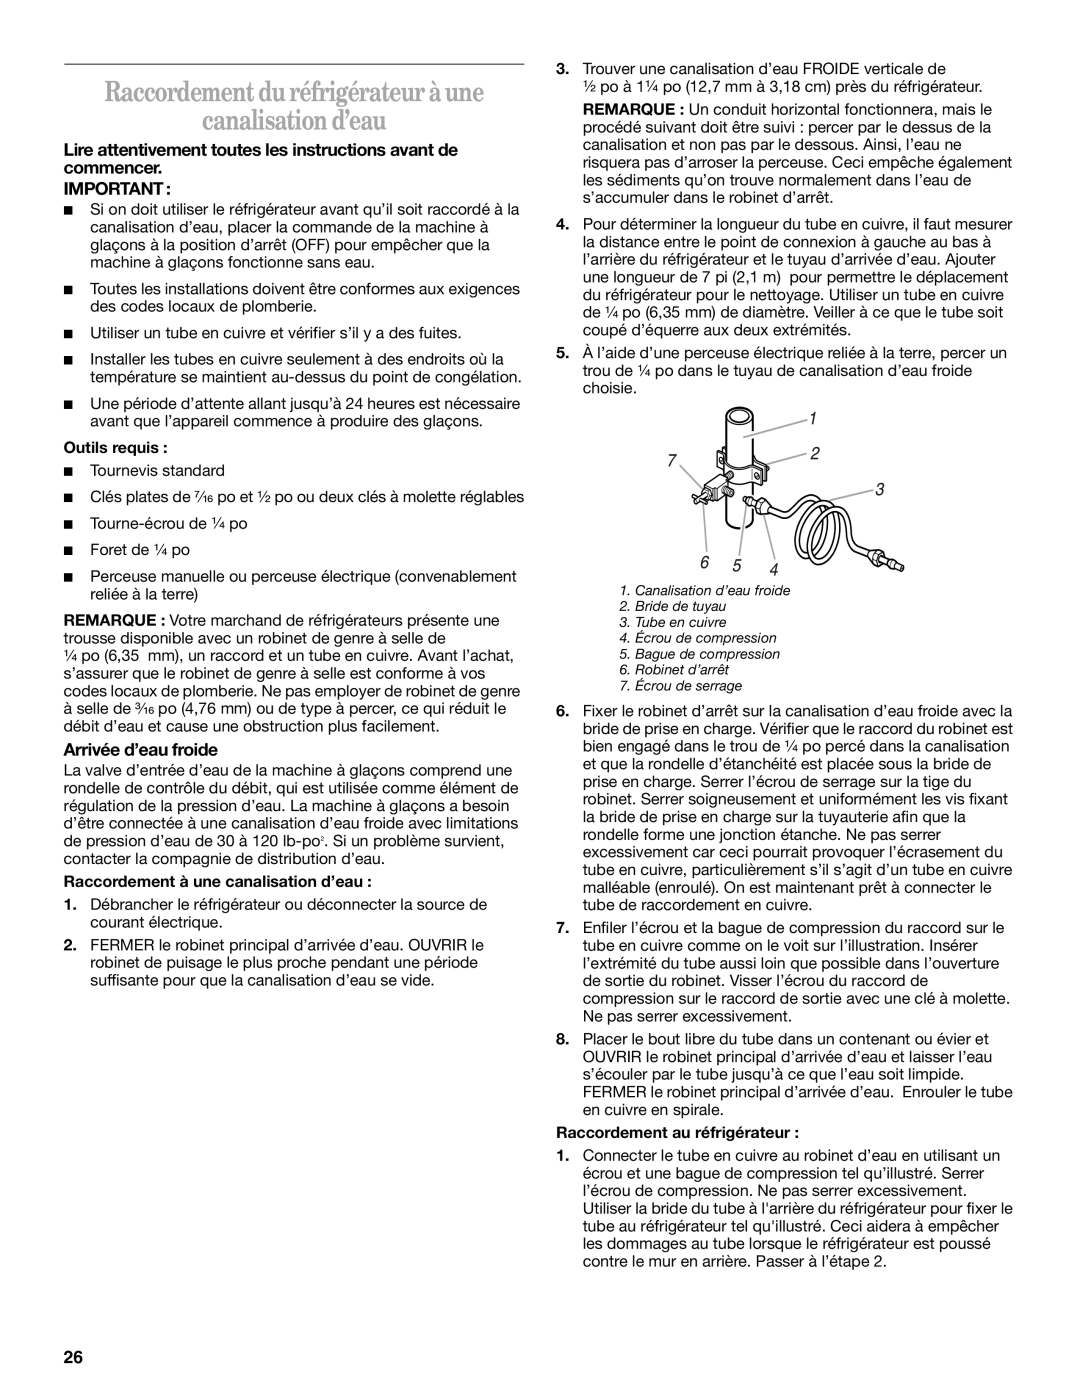 Whirlpool 2212539 manual Raccordement du réfrigérateur à une canalisation d’eau, Arrivée d’eau froide, Outils requis 